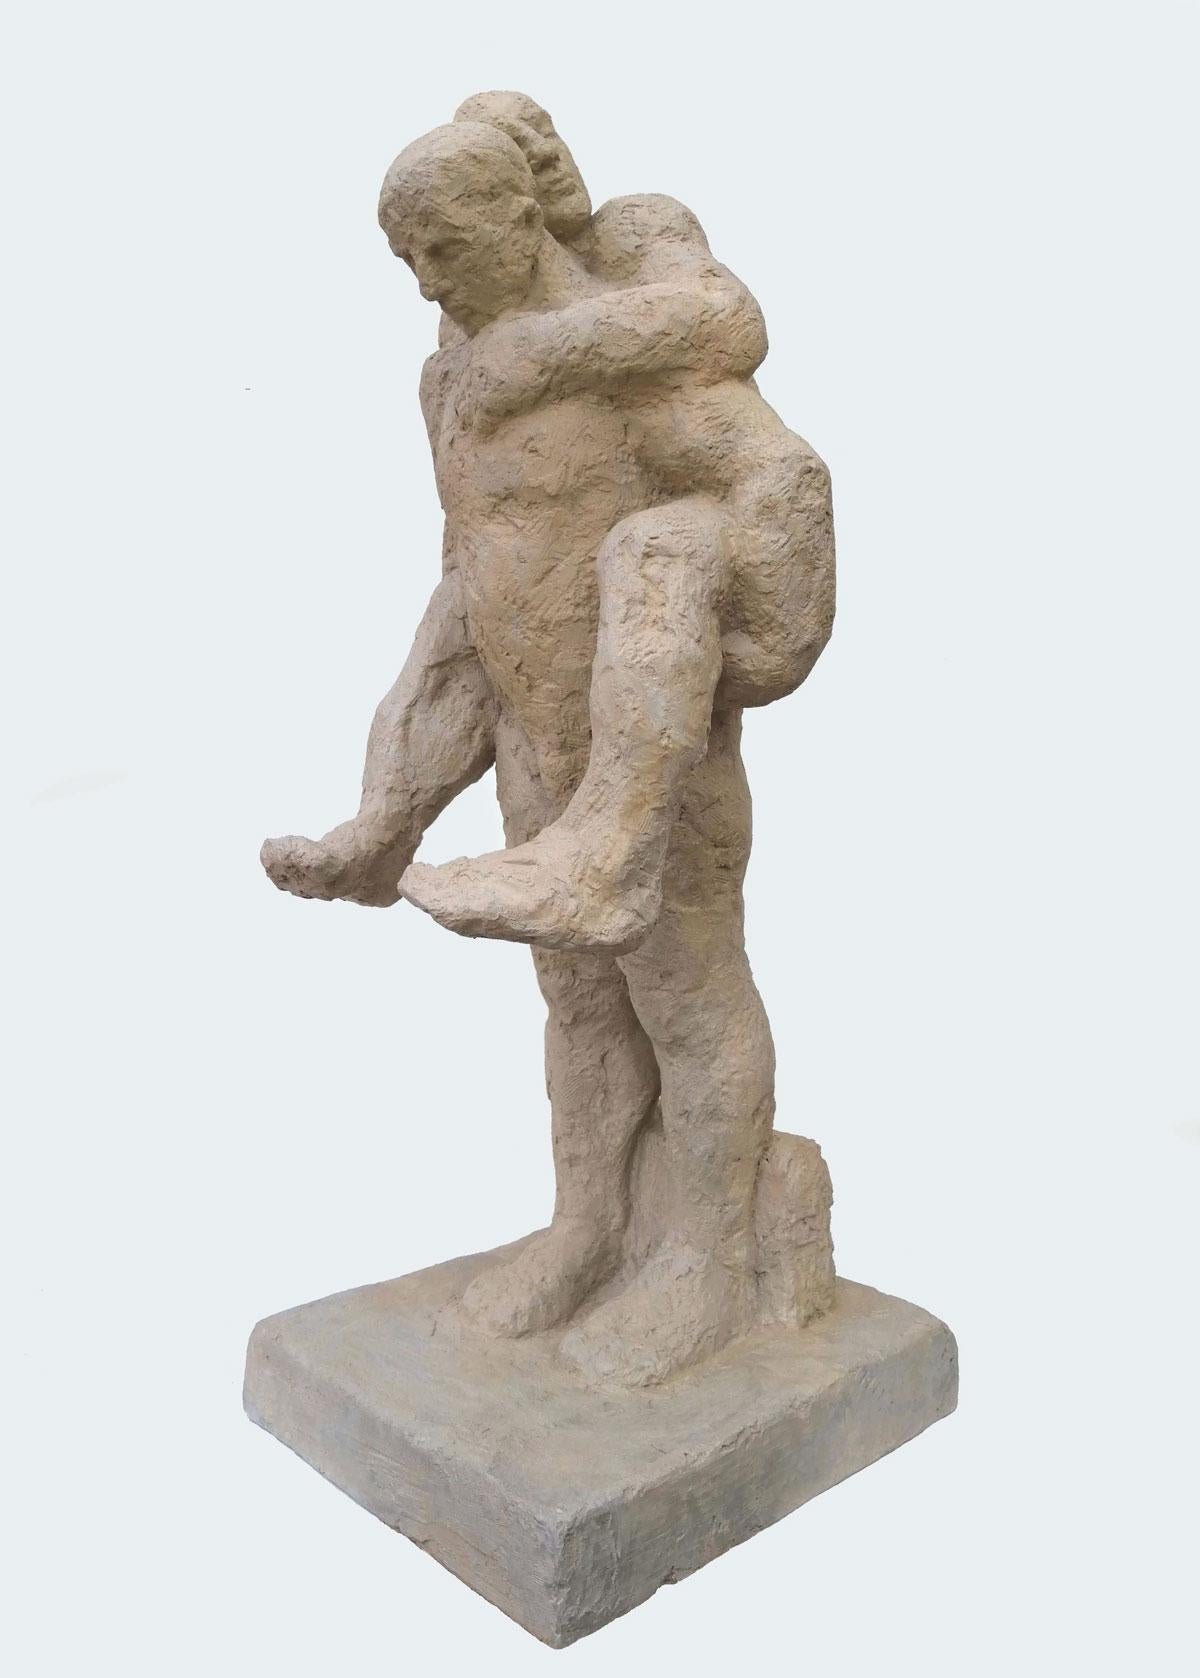 On Southend Beach - Zeitgenössische figurative Skulptur aus Jesmonit